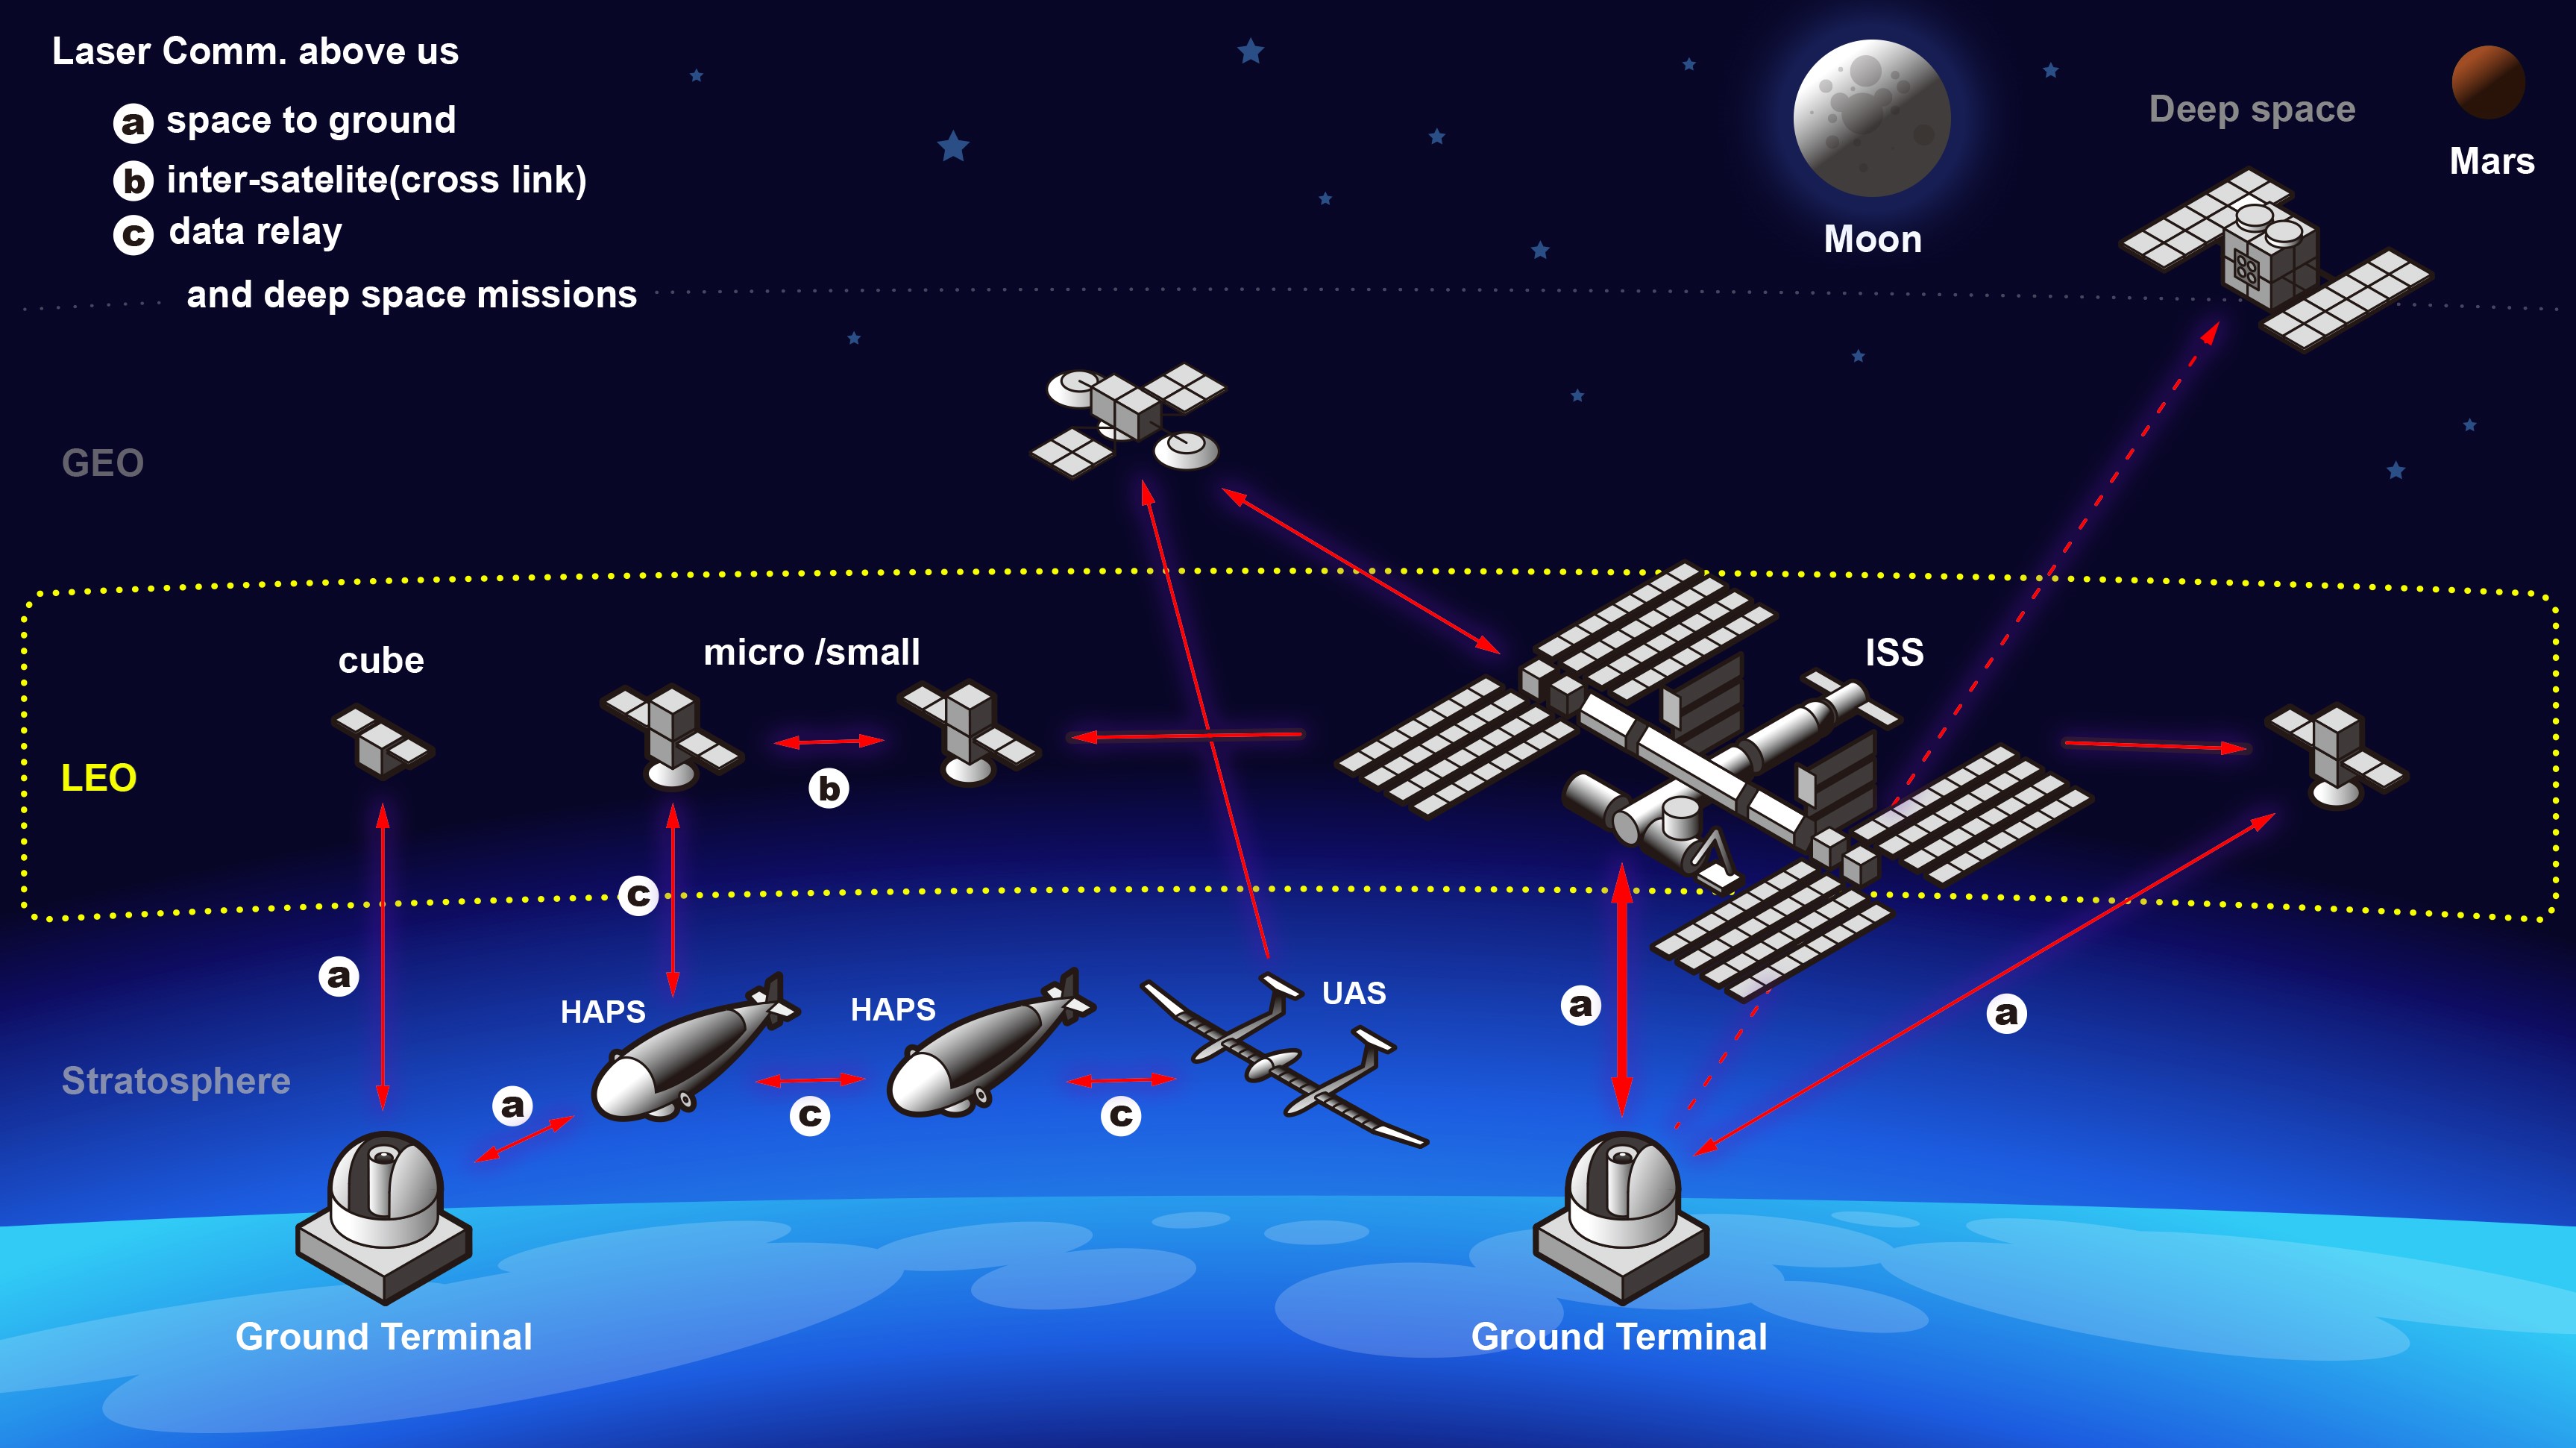 の 地球 と 距離 iss 夜空を横切る国際宇宙ステーションの速度を、スマートフォンのカメラだけで測定する方法